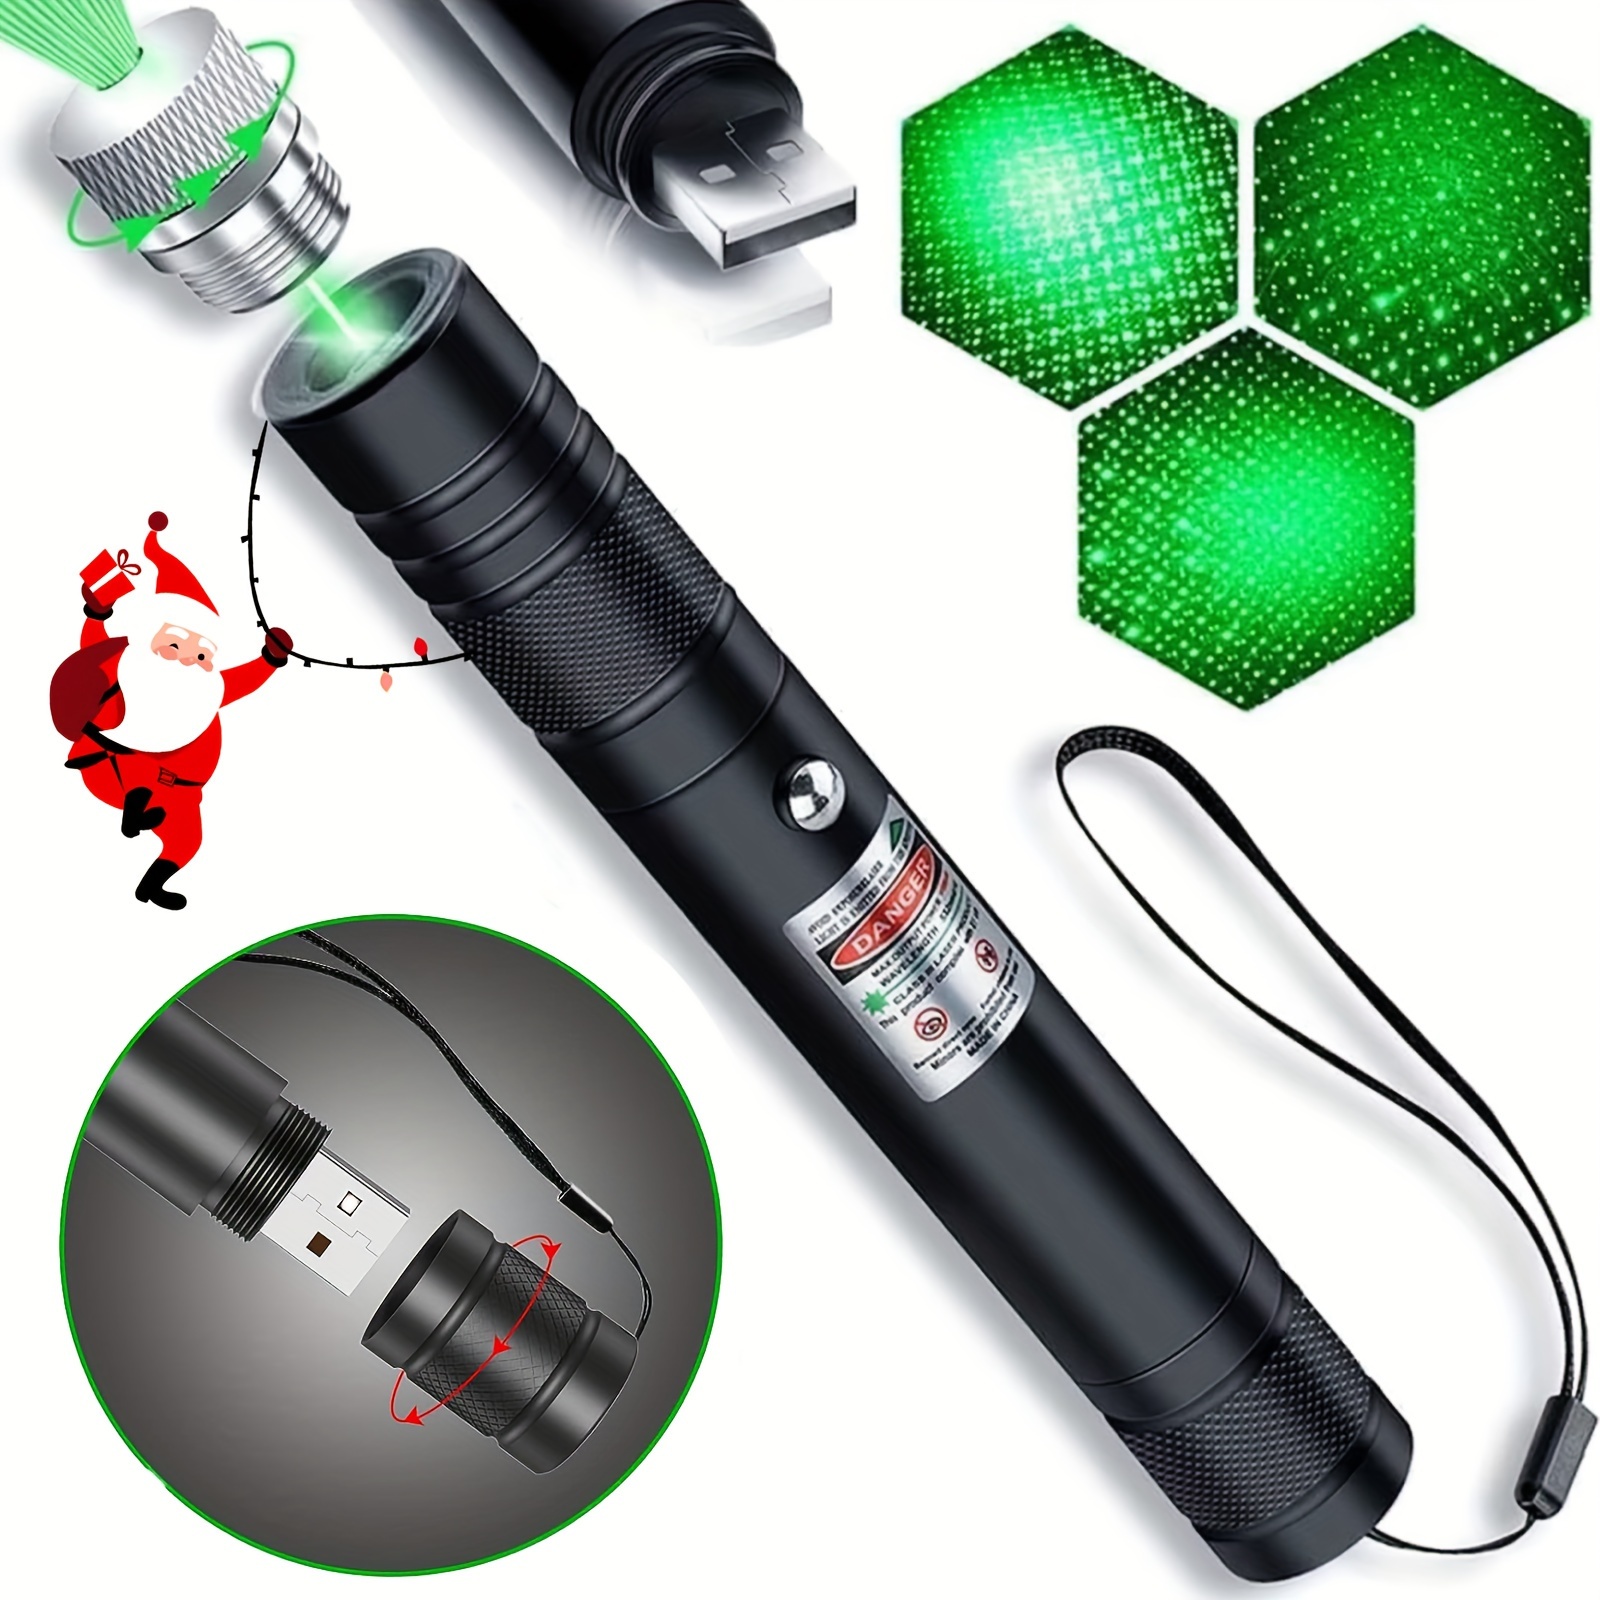 Puntero láser verde de alta potencia, puntero láser verde fuerte de largo  alcance, puntero láser recargable por USB, para presentaciones, enseñanza